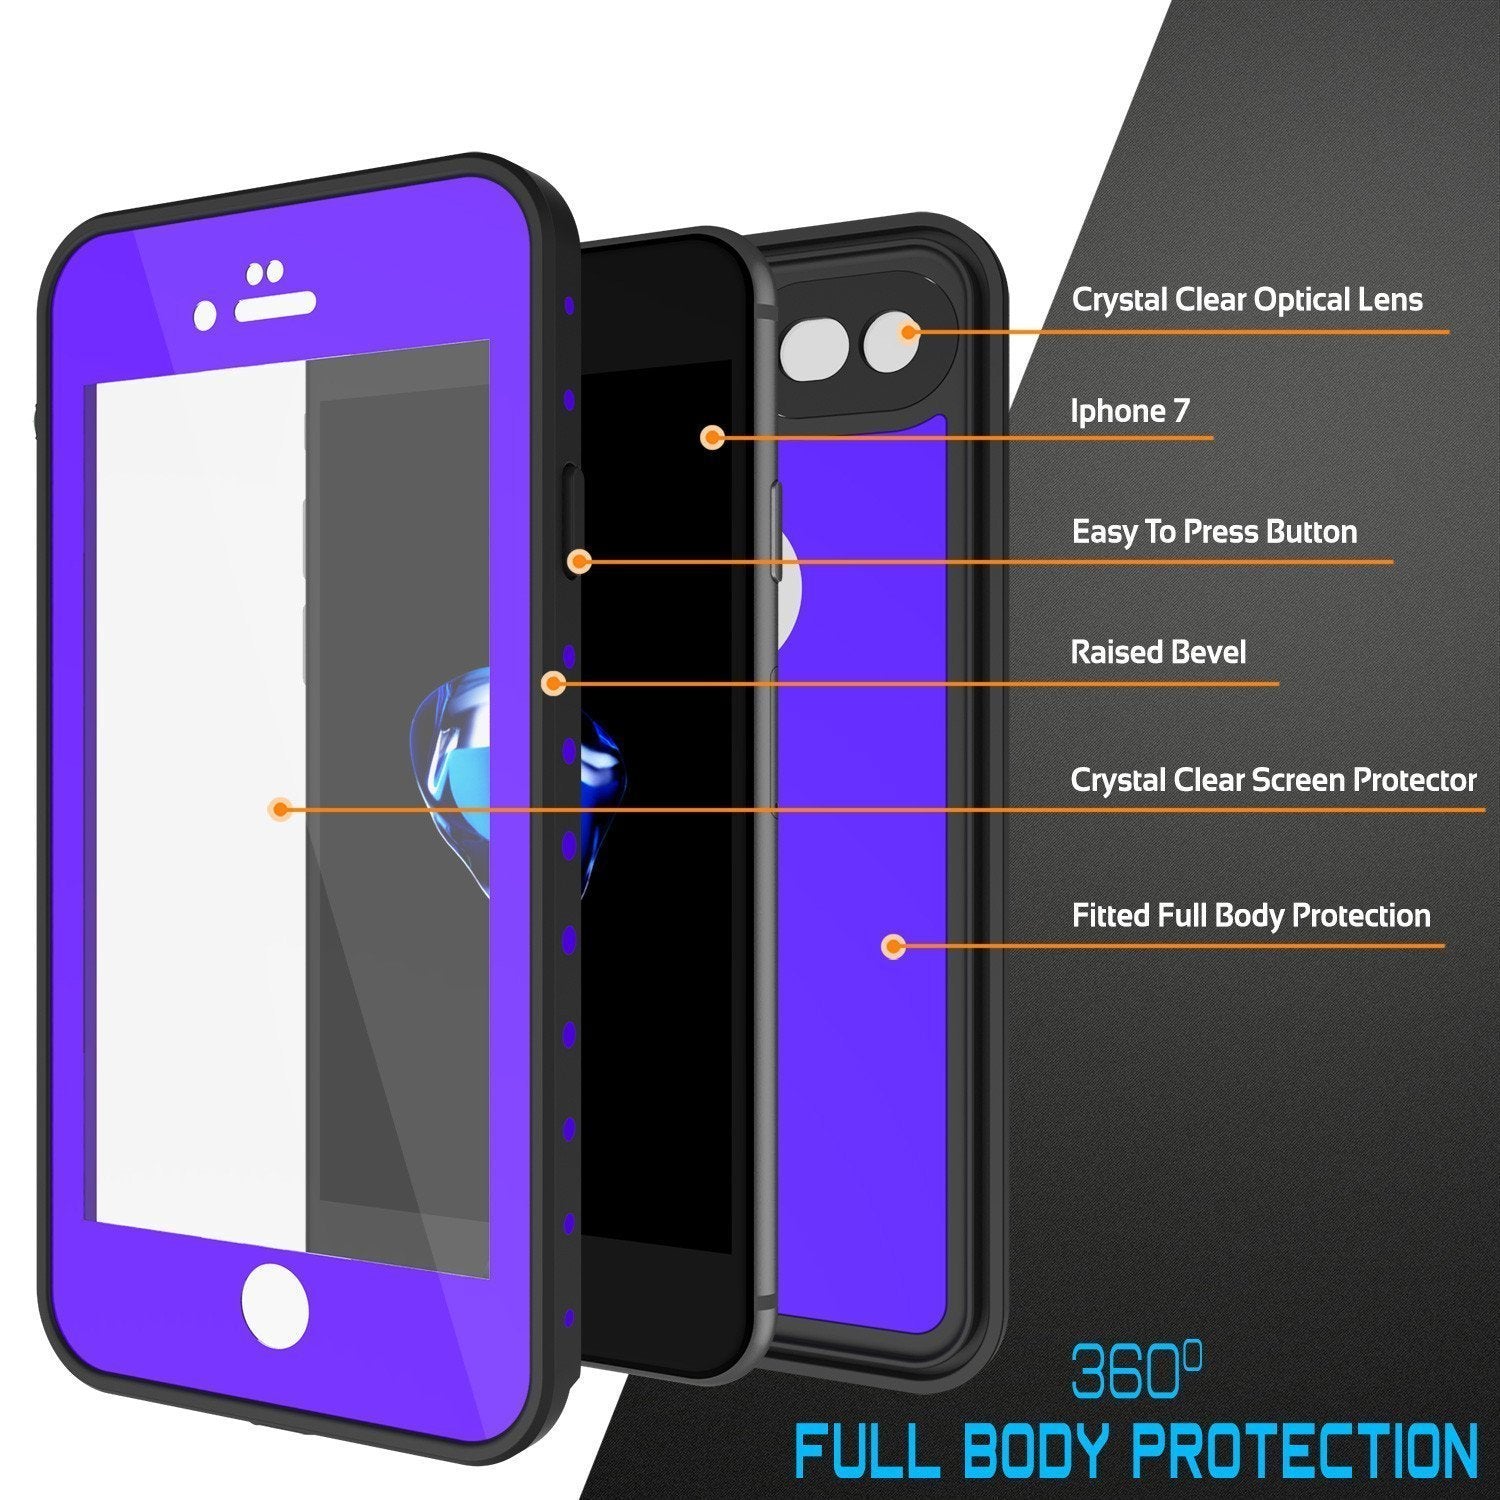 iPhone SE (4.7") Waterproof Case, Punkcase [Purple] [StudStar Series] [Slim Fit][IP68 Certified]  [Dirtproof] [Snowproof]